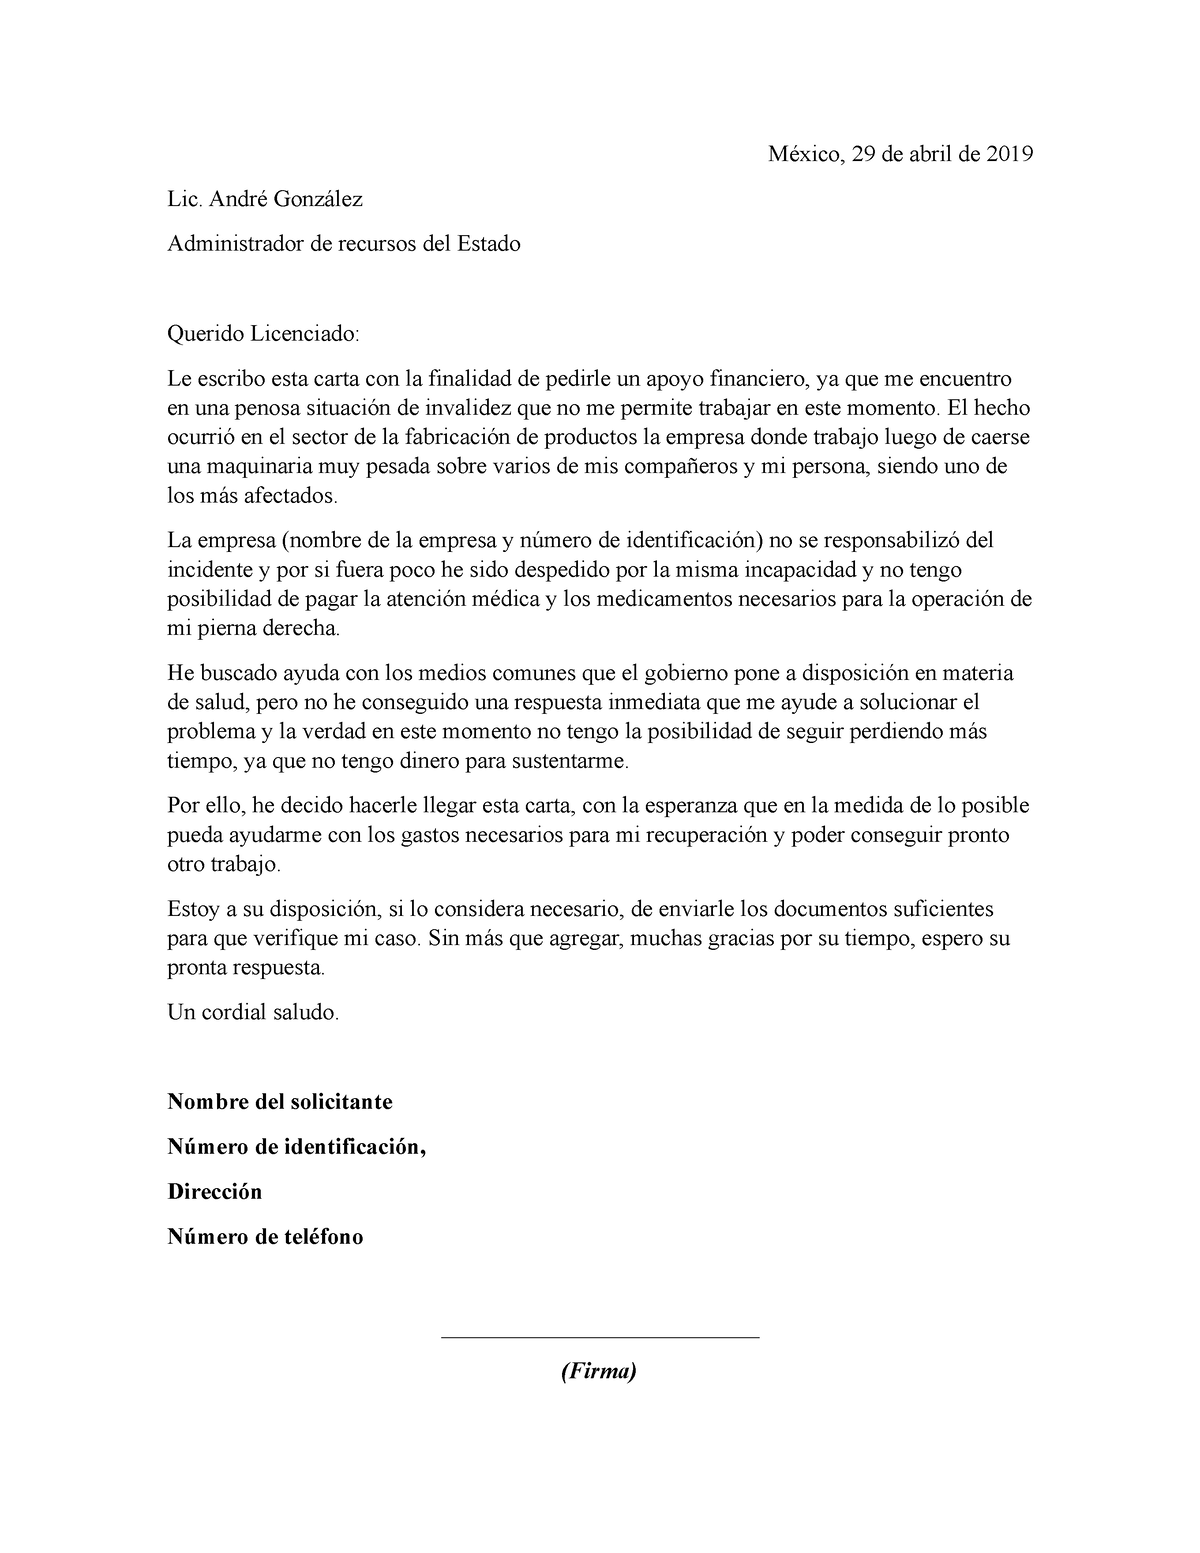 Ejemplo De Carta Solicitud De Apoyo Economico México 29 De Abril De 2019 Lic André González 2985